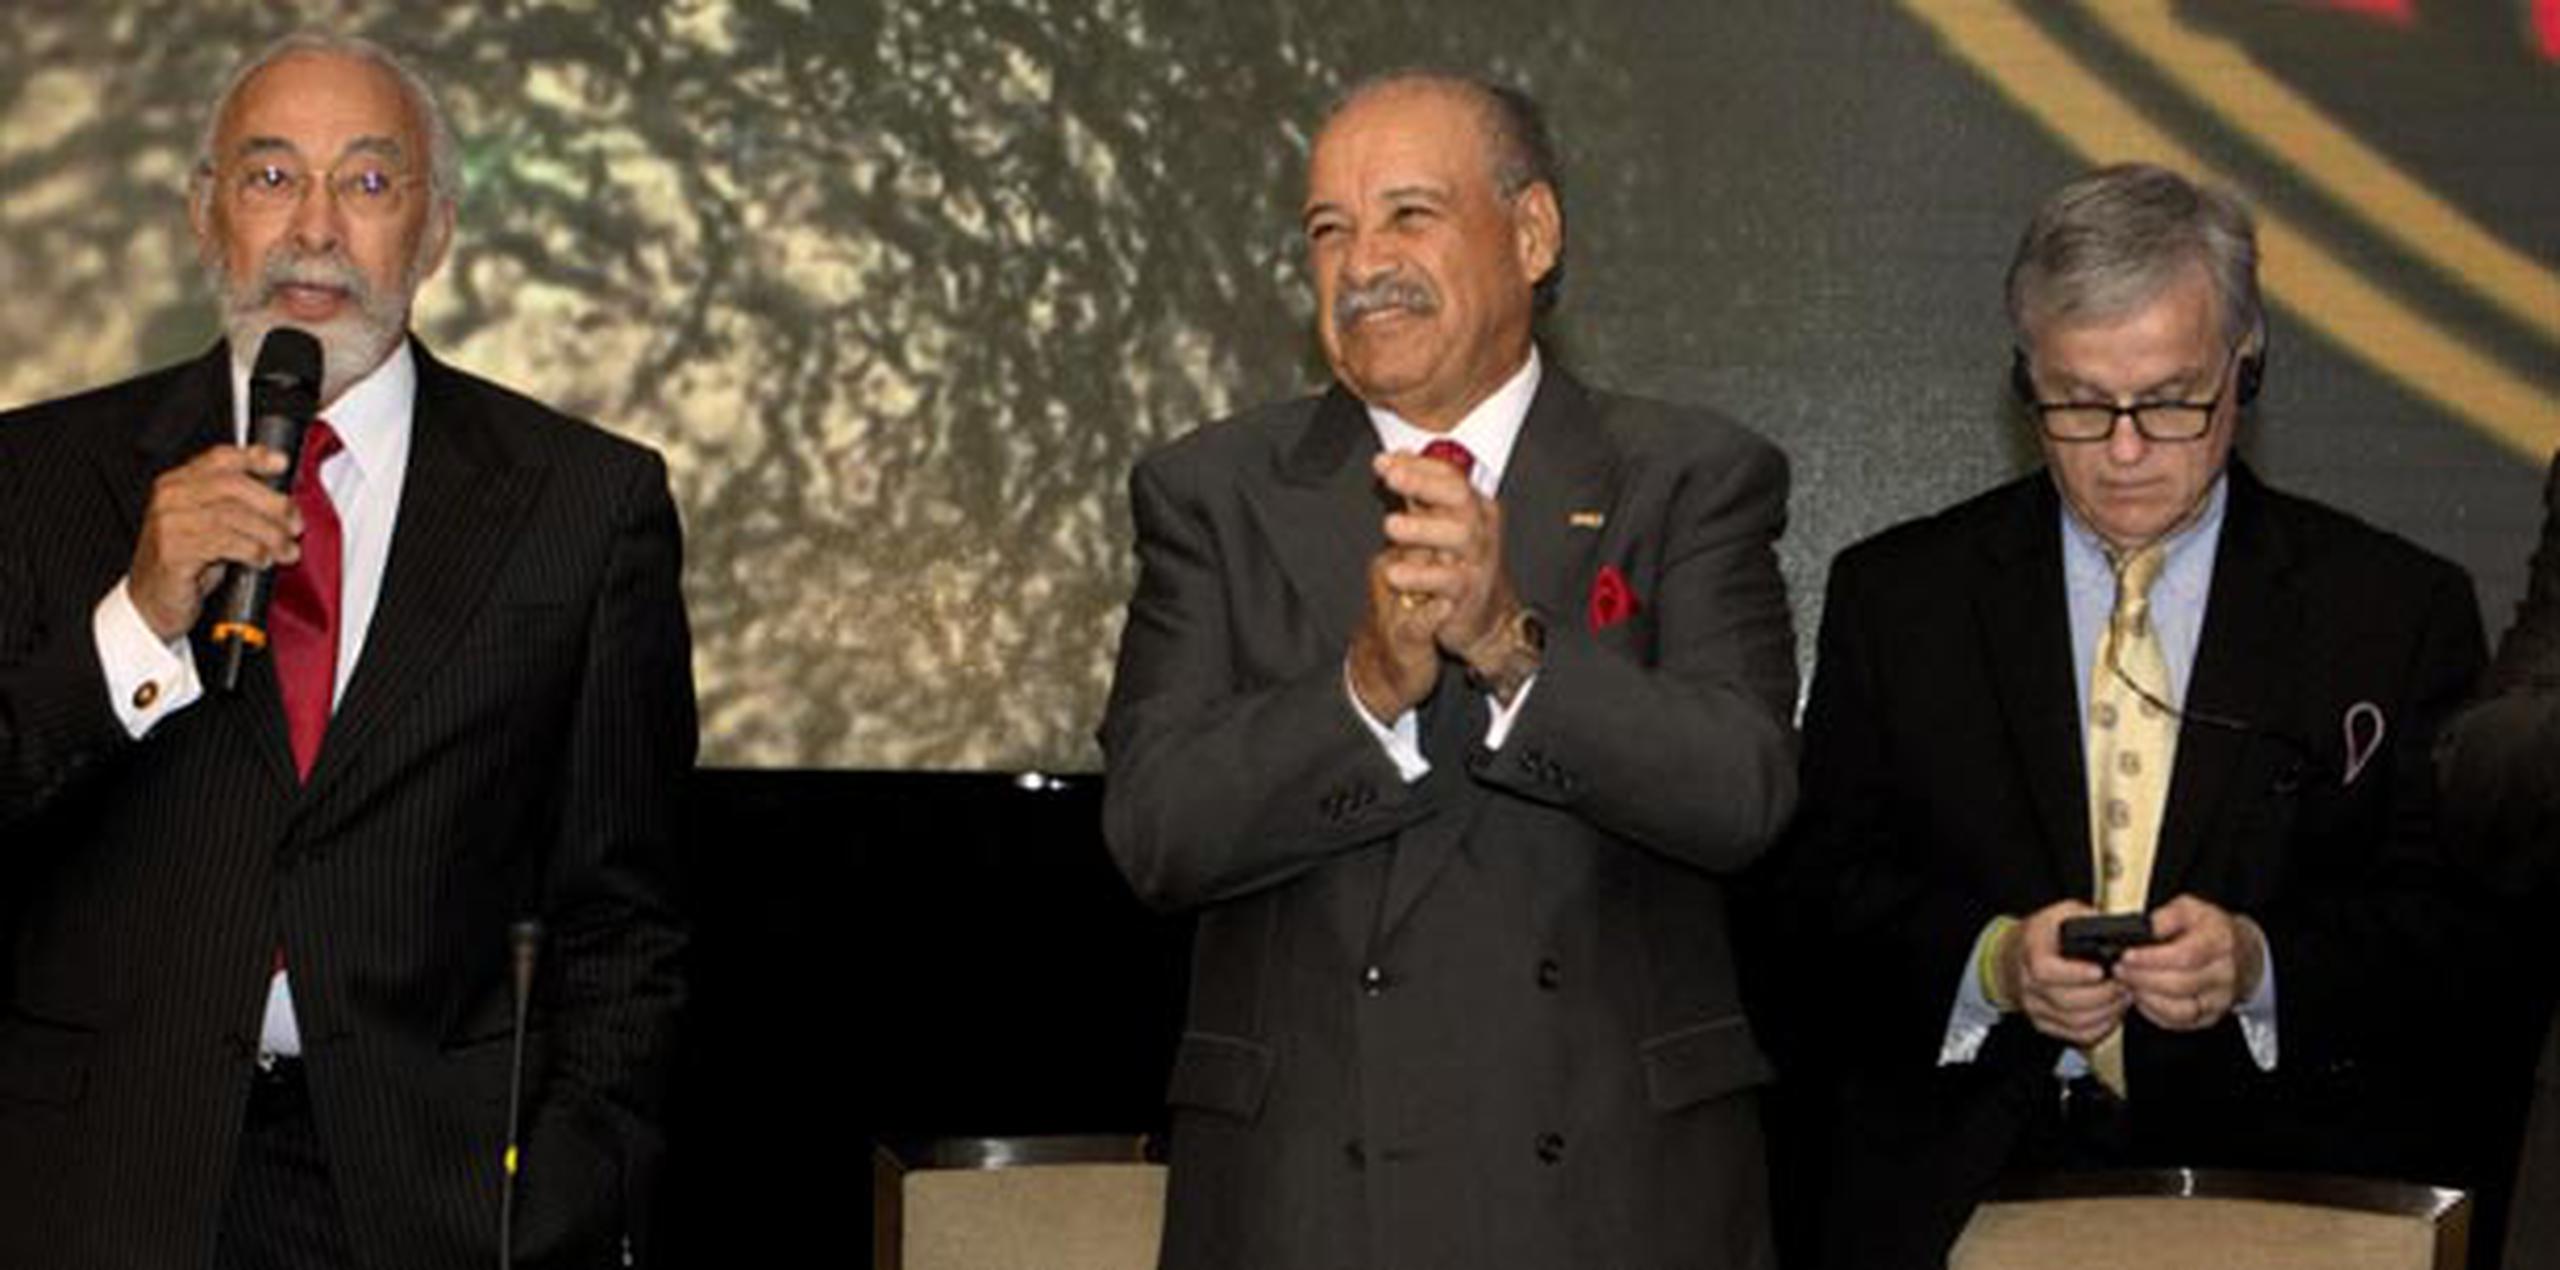 Francisco “Paco” Valcárcel (en el centro) expresó estar "muy contento" por la elección.  (Suministrada)